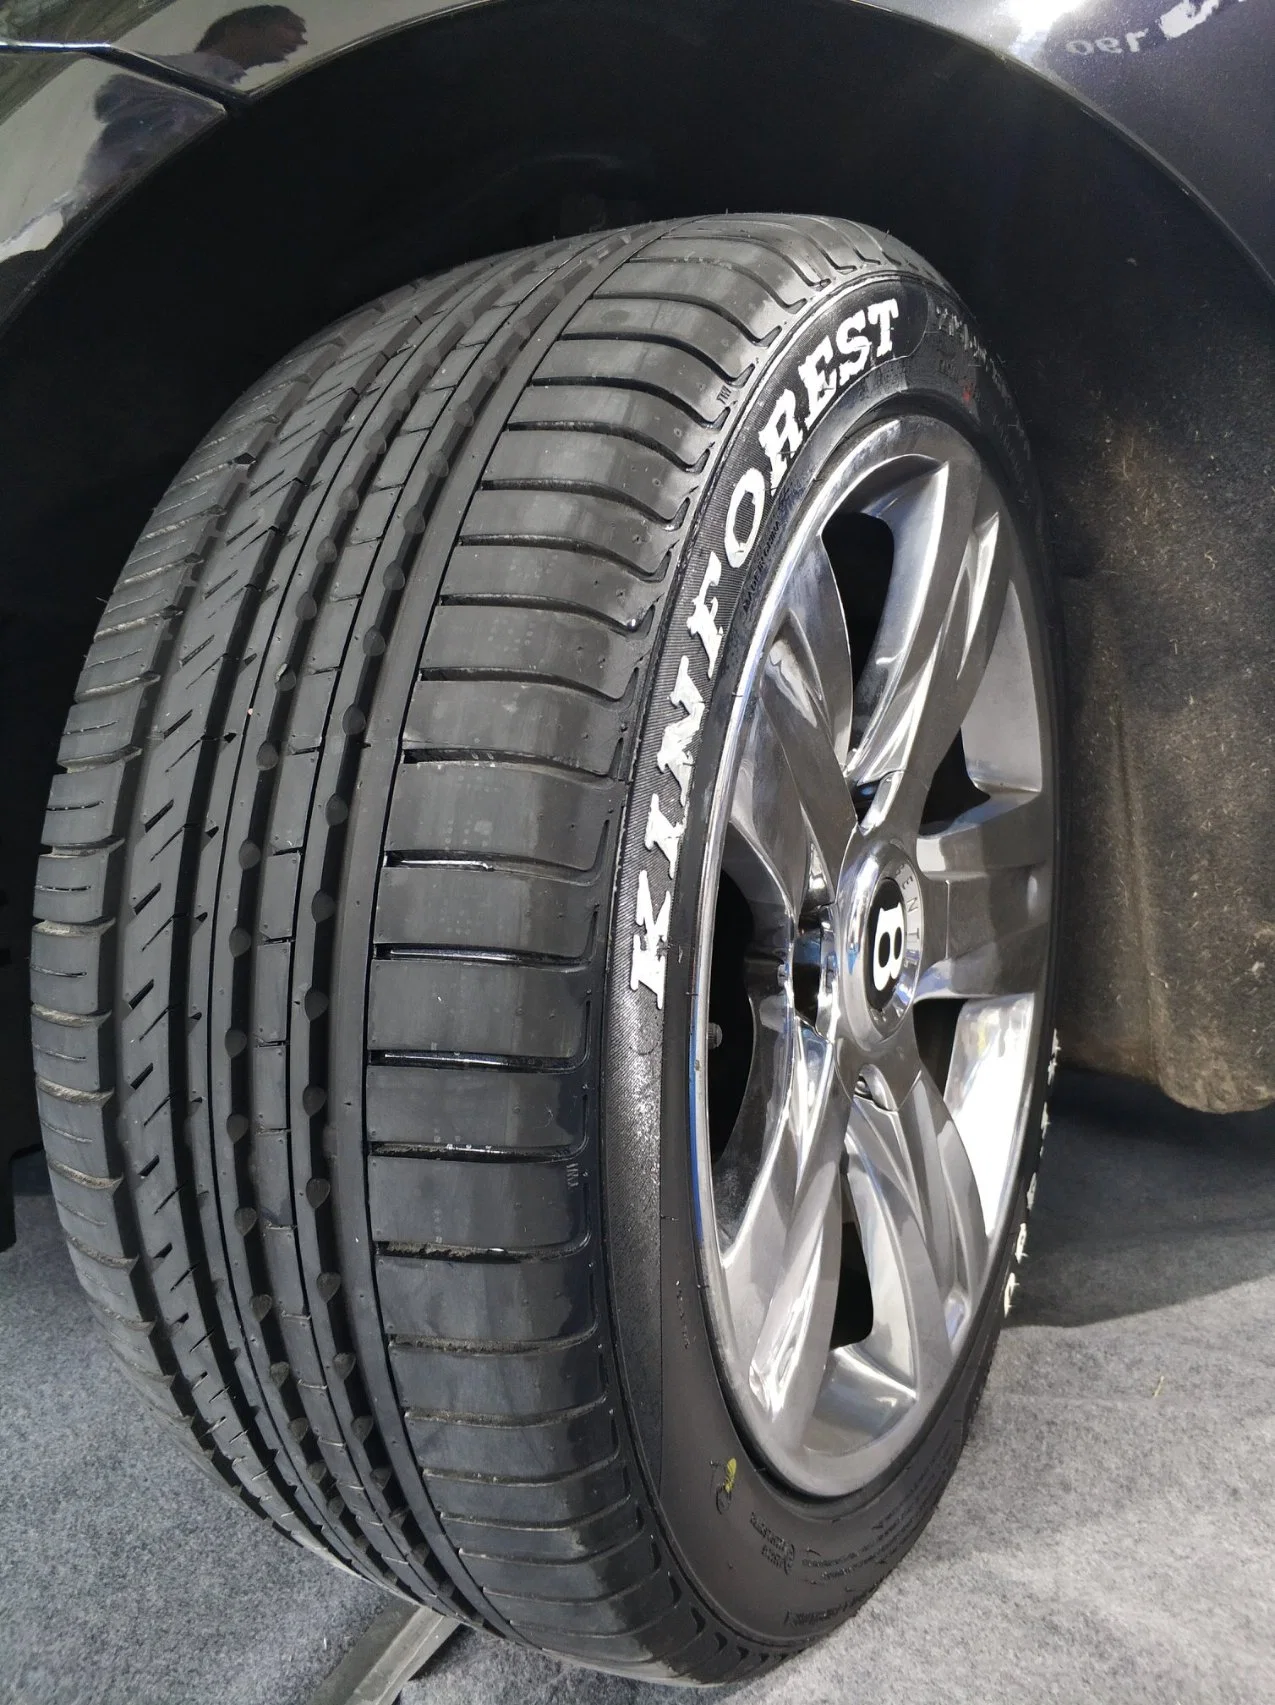 Non utilisé à bon marché les pneus Premium Grade pas utilisé les pneus 245/40ZR18 pour la vente faible bruit de la ville de Conduite de voiture de tourisme Eco Friendly ultra hautes performances en caoutchouc des pneus de voiture